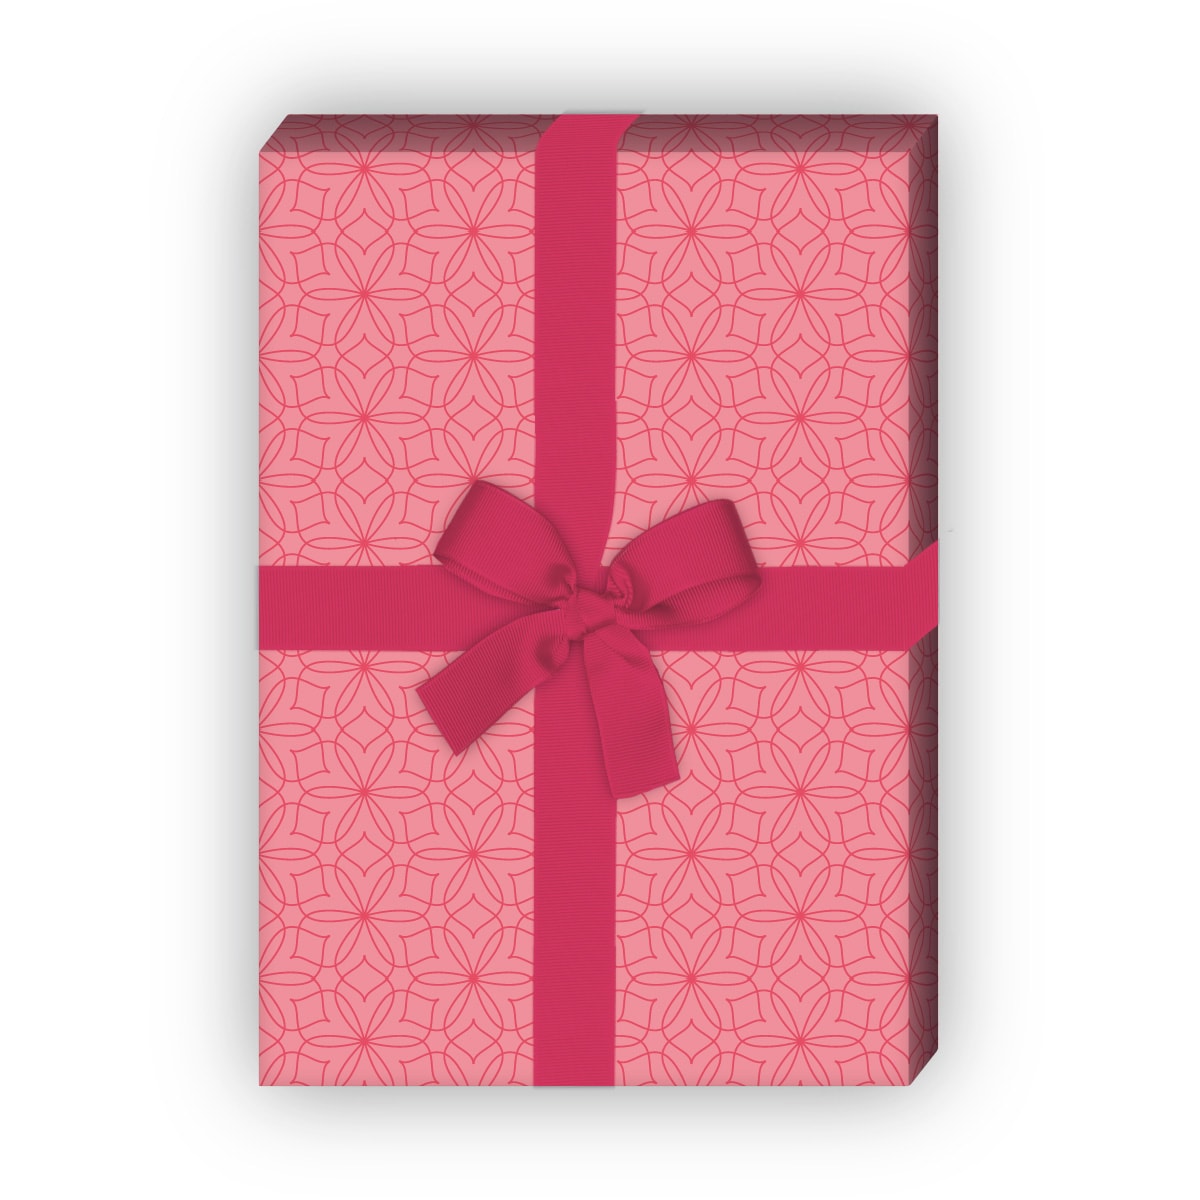 Kartenkaufrausch: Stern Blumen Geschenkpapier mit aus unserer florale Papeterie in rosa